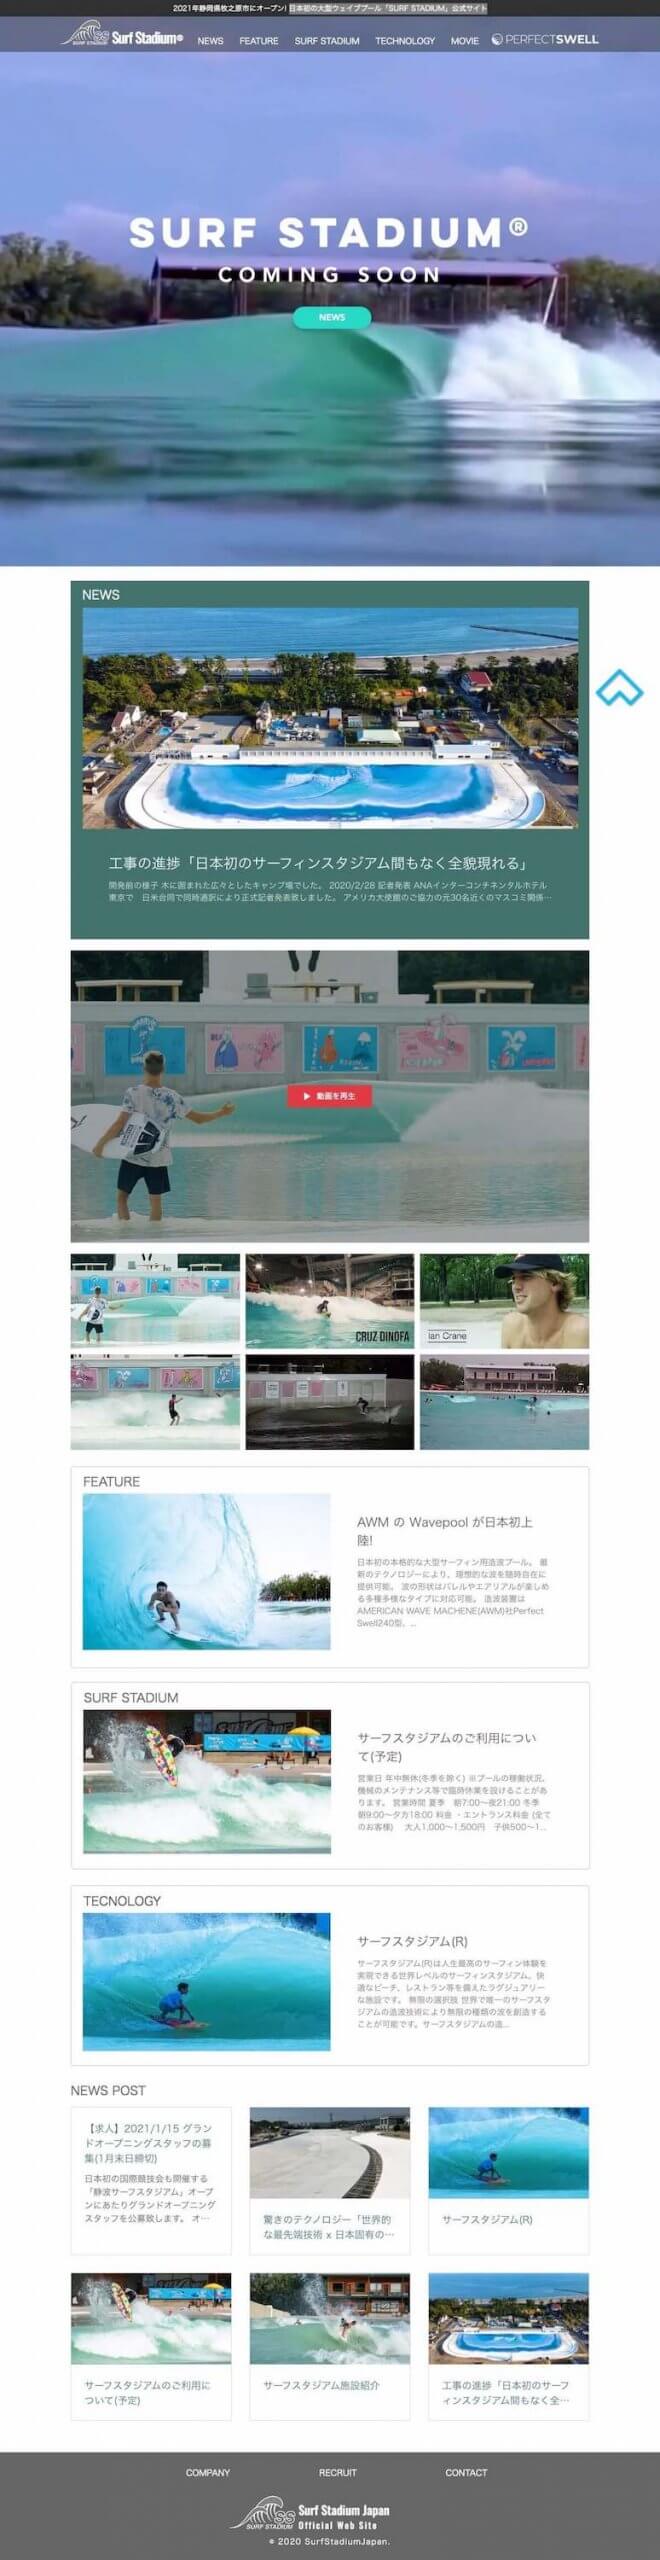 日本初の大型ウェイブプール「SURF STADIUM」公式サイト